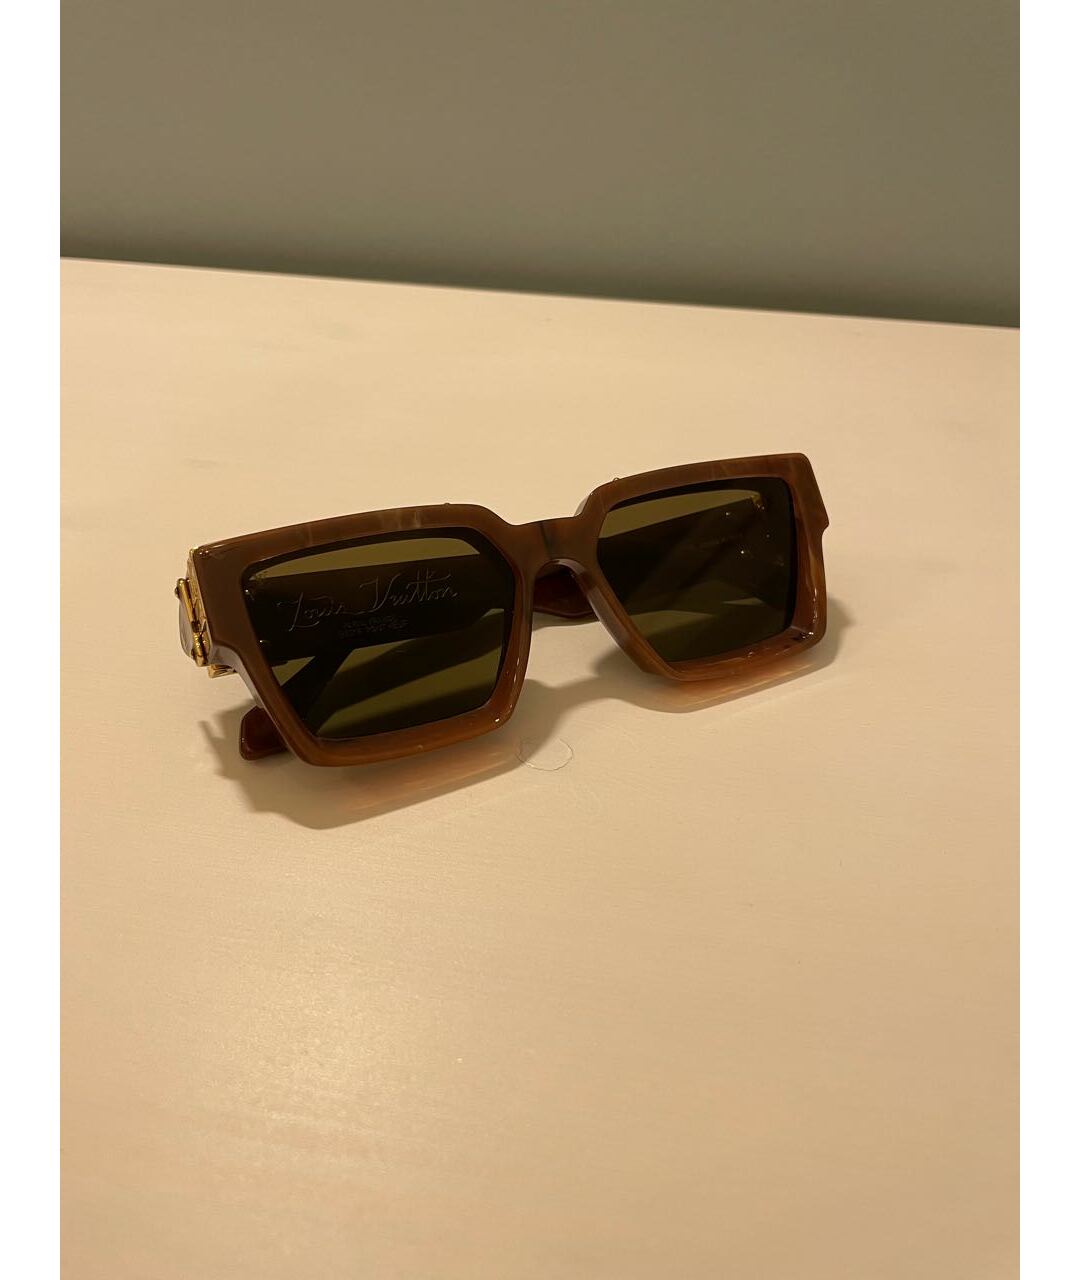 LOUIS VUITTON PRE-OWNED Коричневые солнцезащитные очки, фото 5